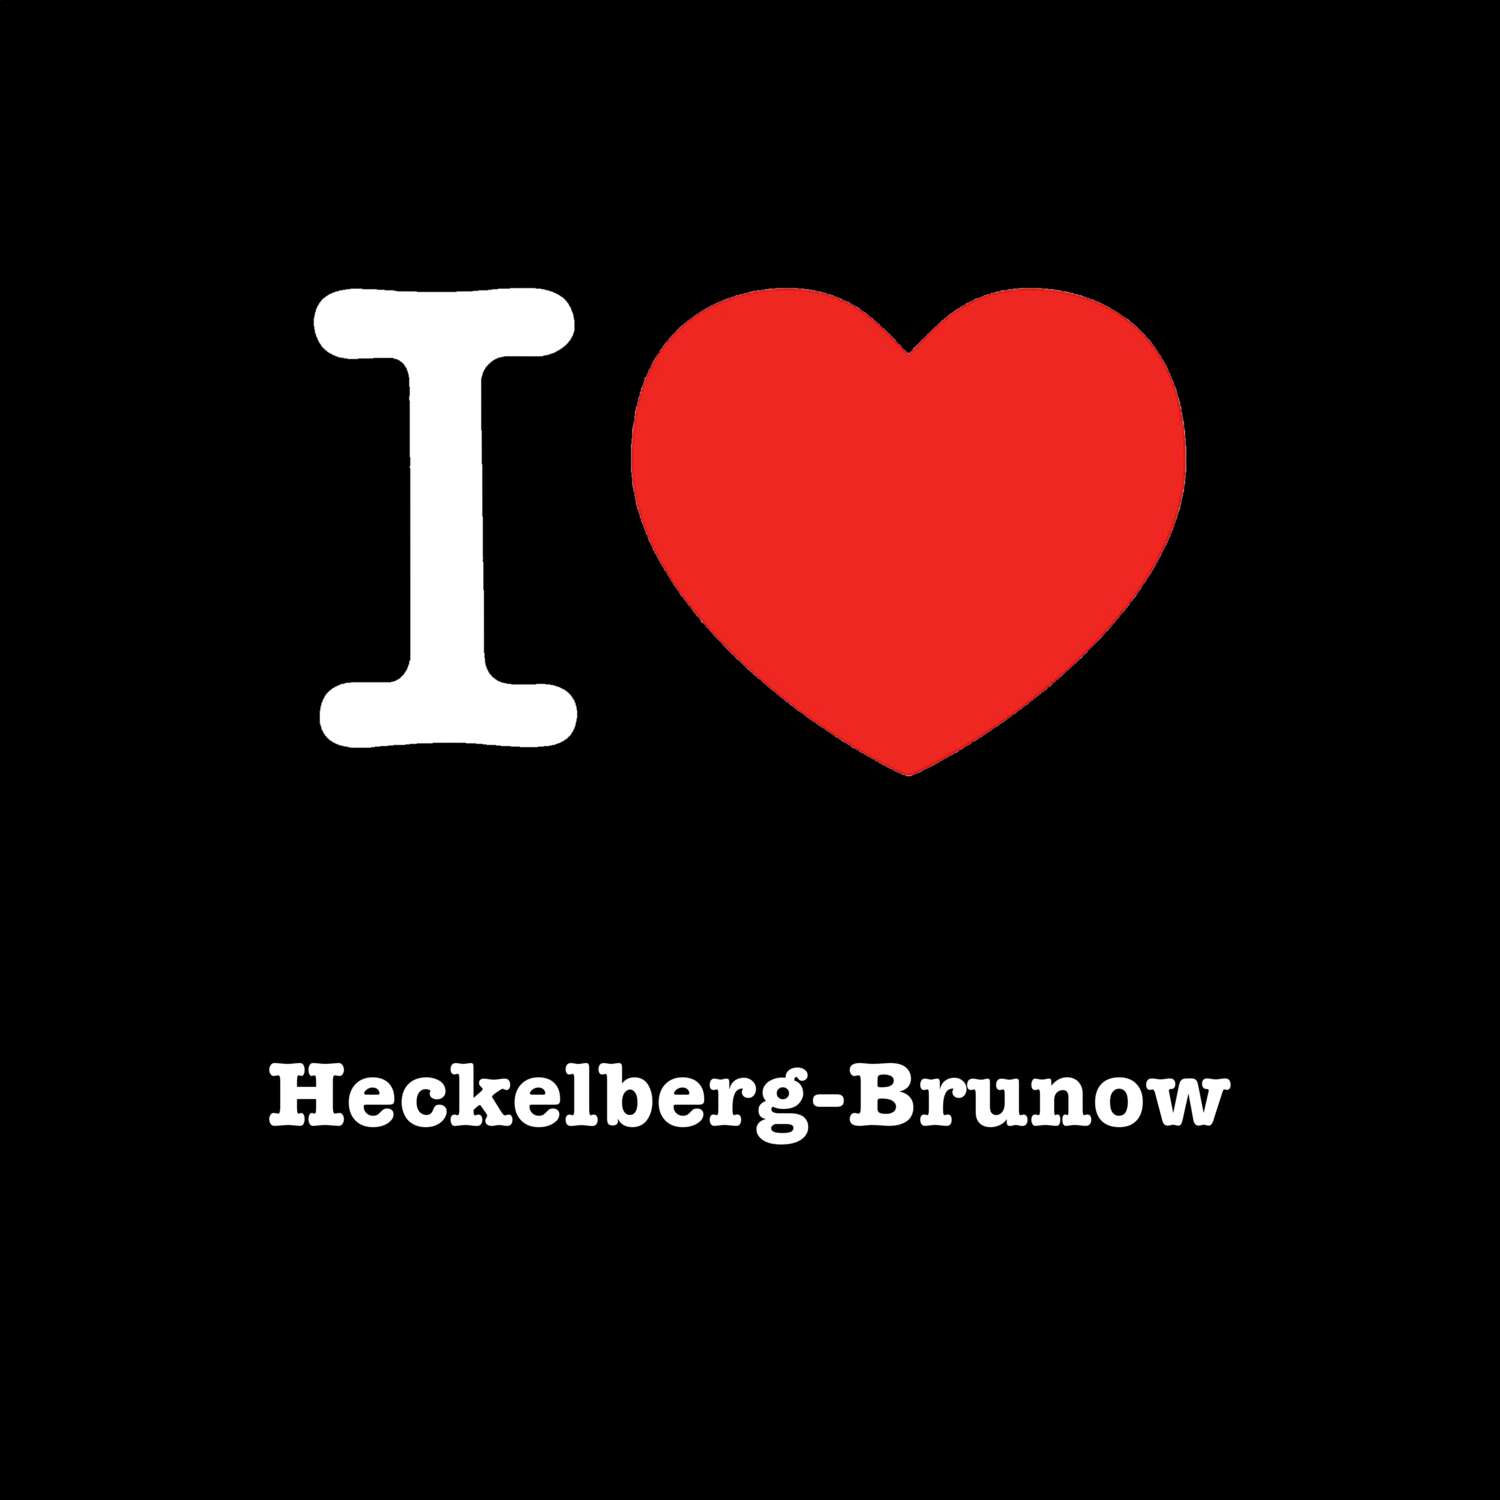 Heckelberg-Brunow T-Shirt »I love«